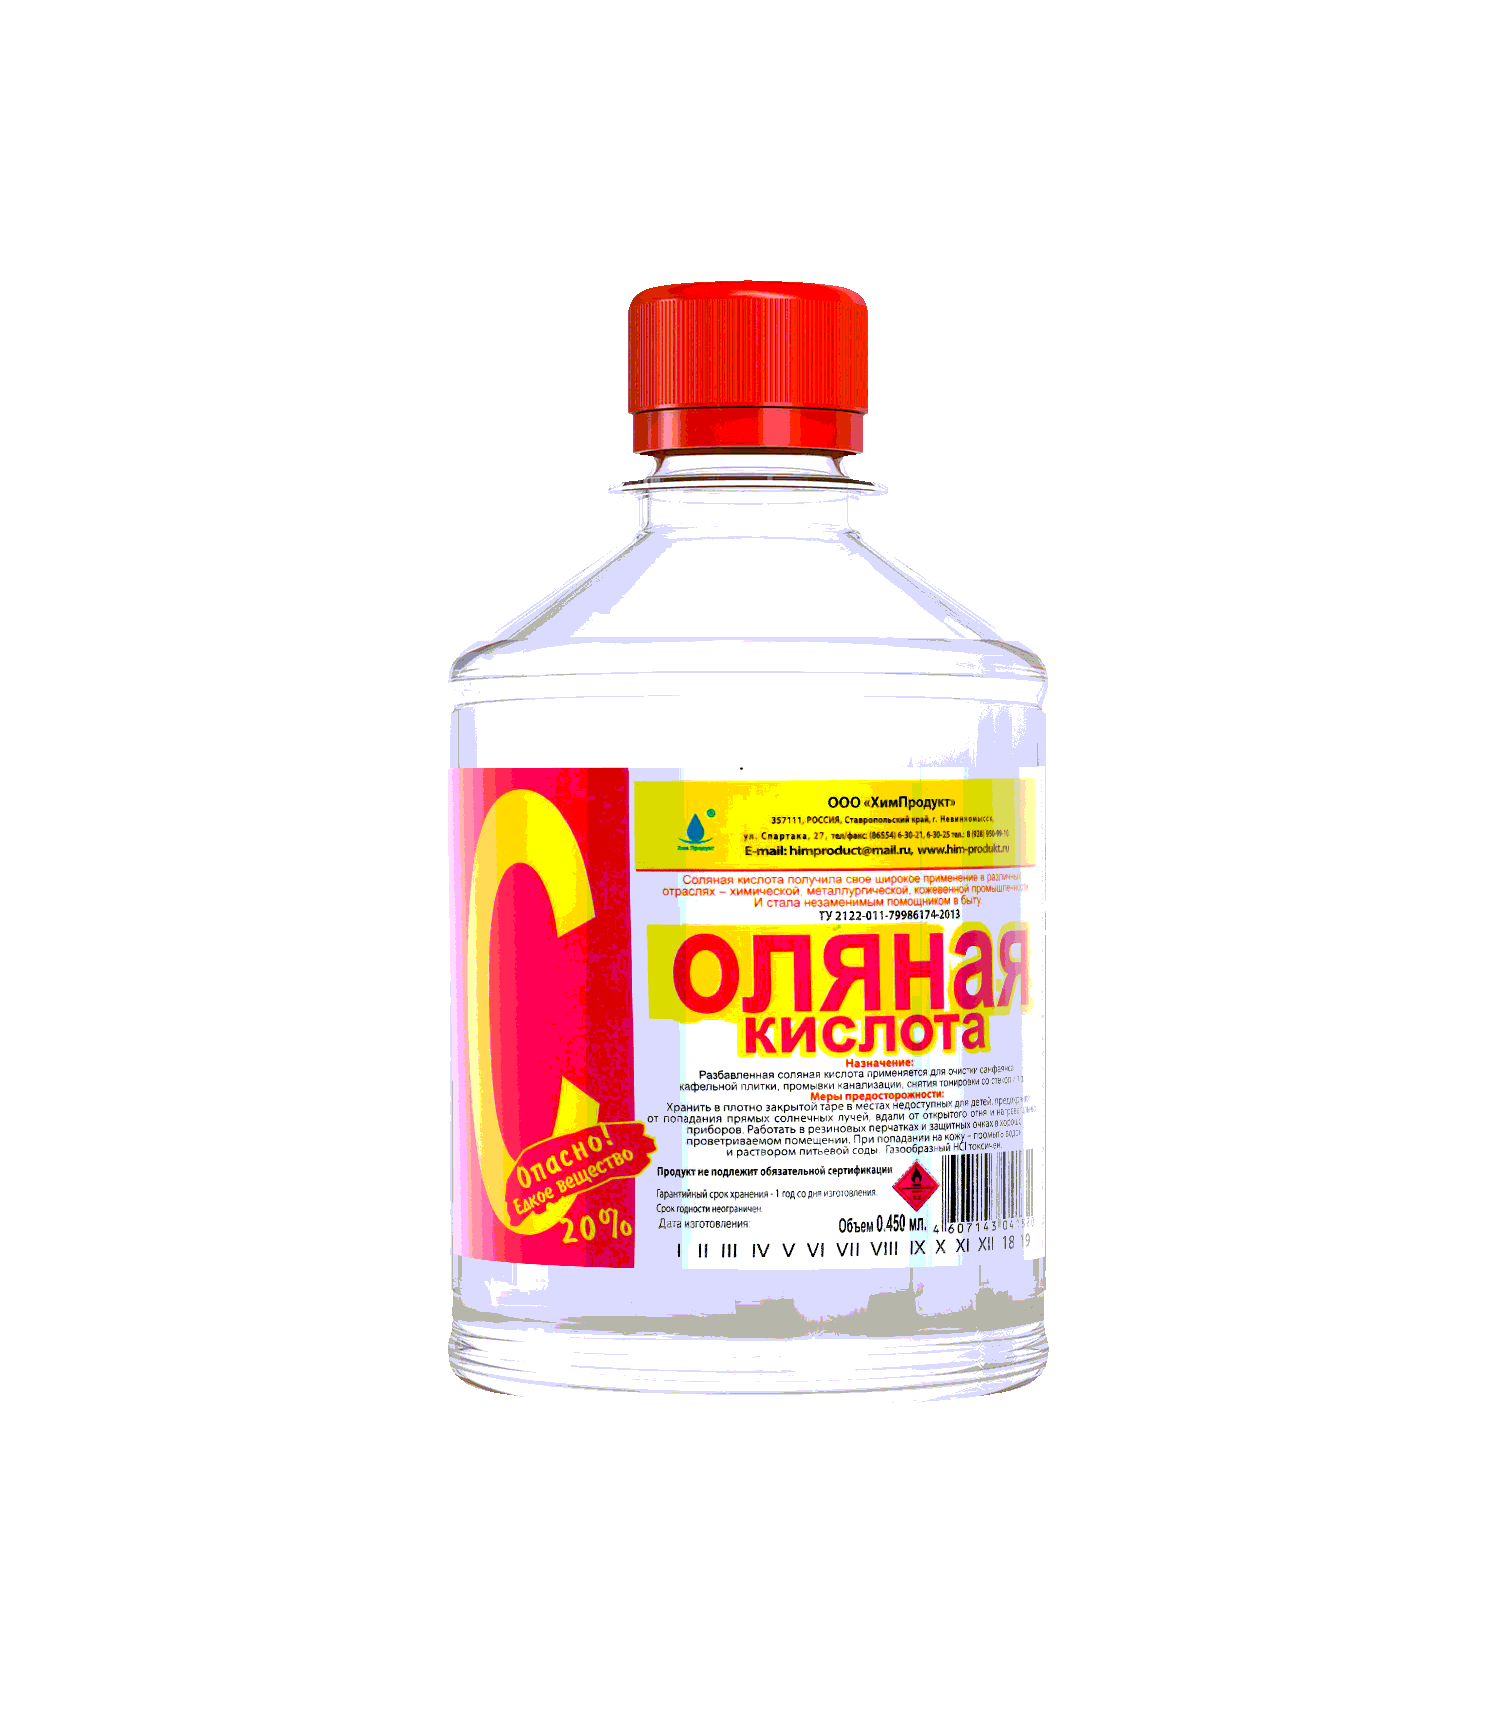 Bao соляная кислота